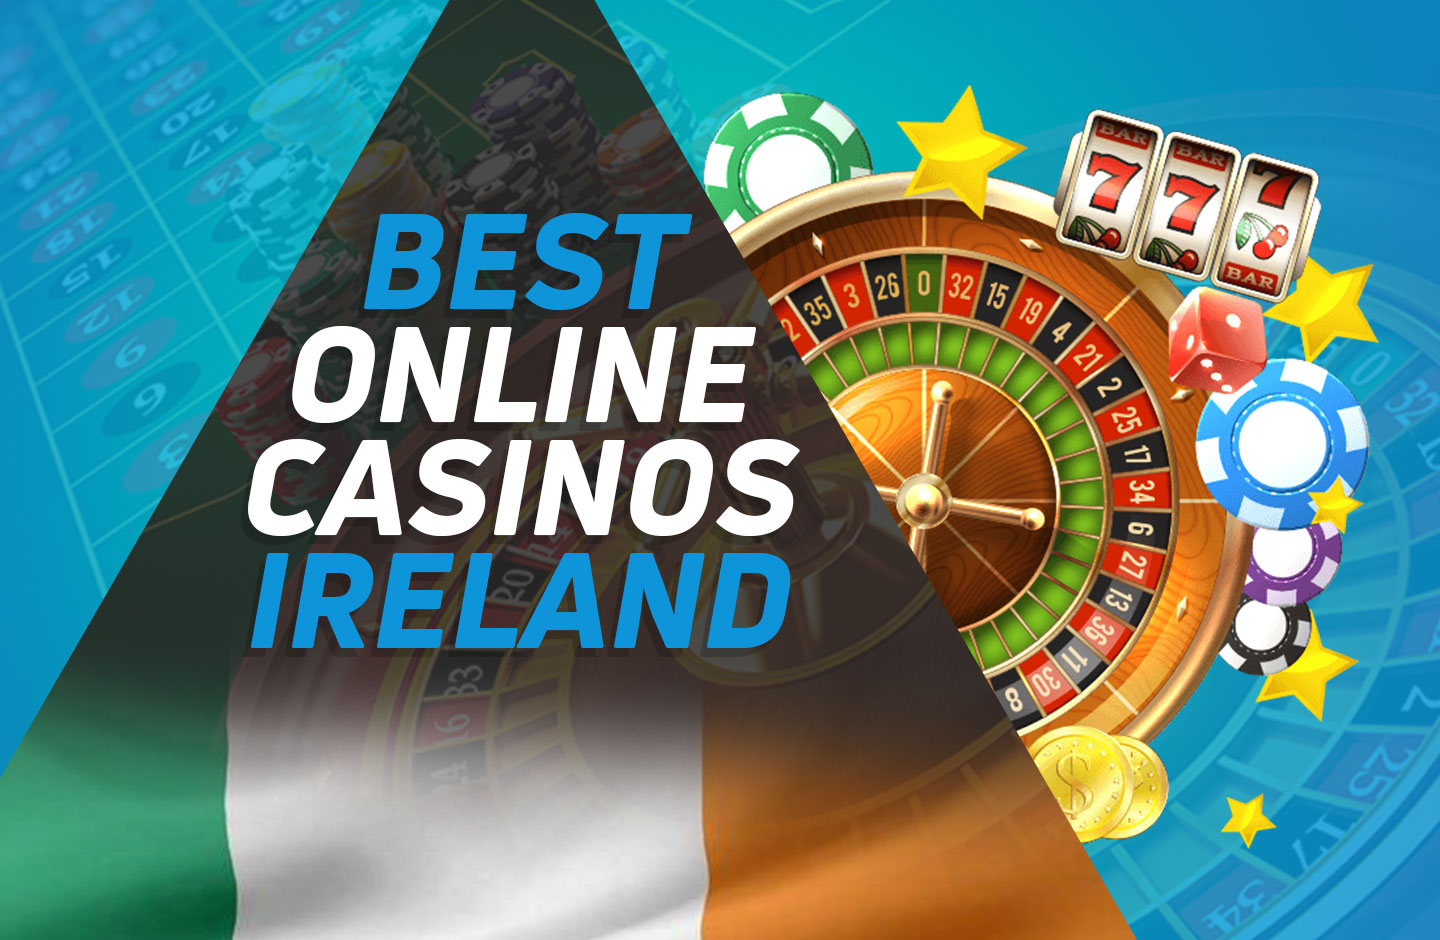 Irish casino online Cheet Sheet